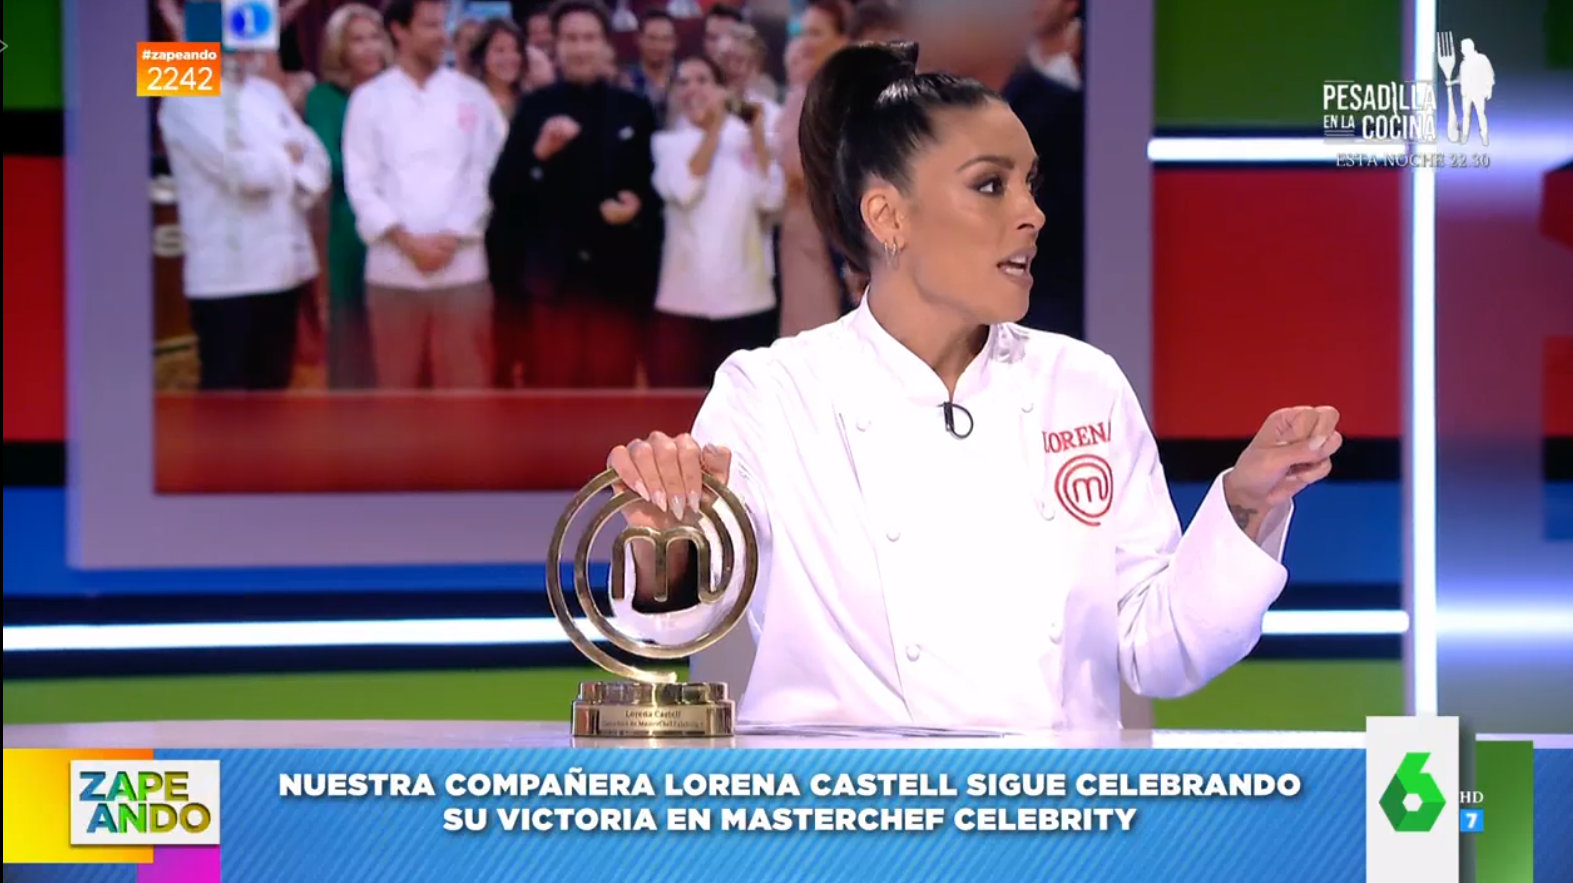 Lorena Castell Aparece Con La Chaquetilla Y El Trofeo De Masterchef En Zapeando Esto Es Un